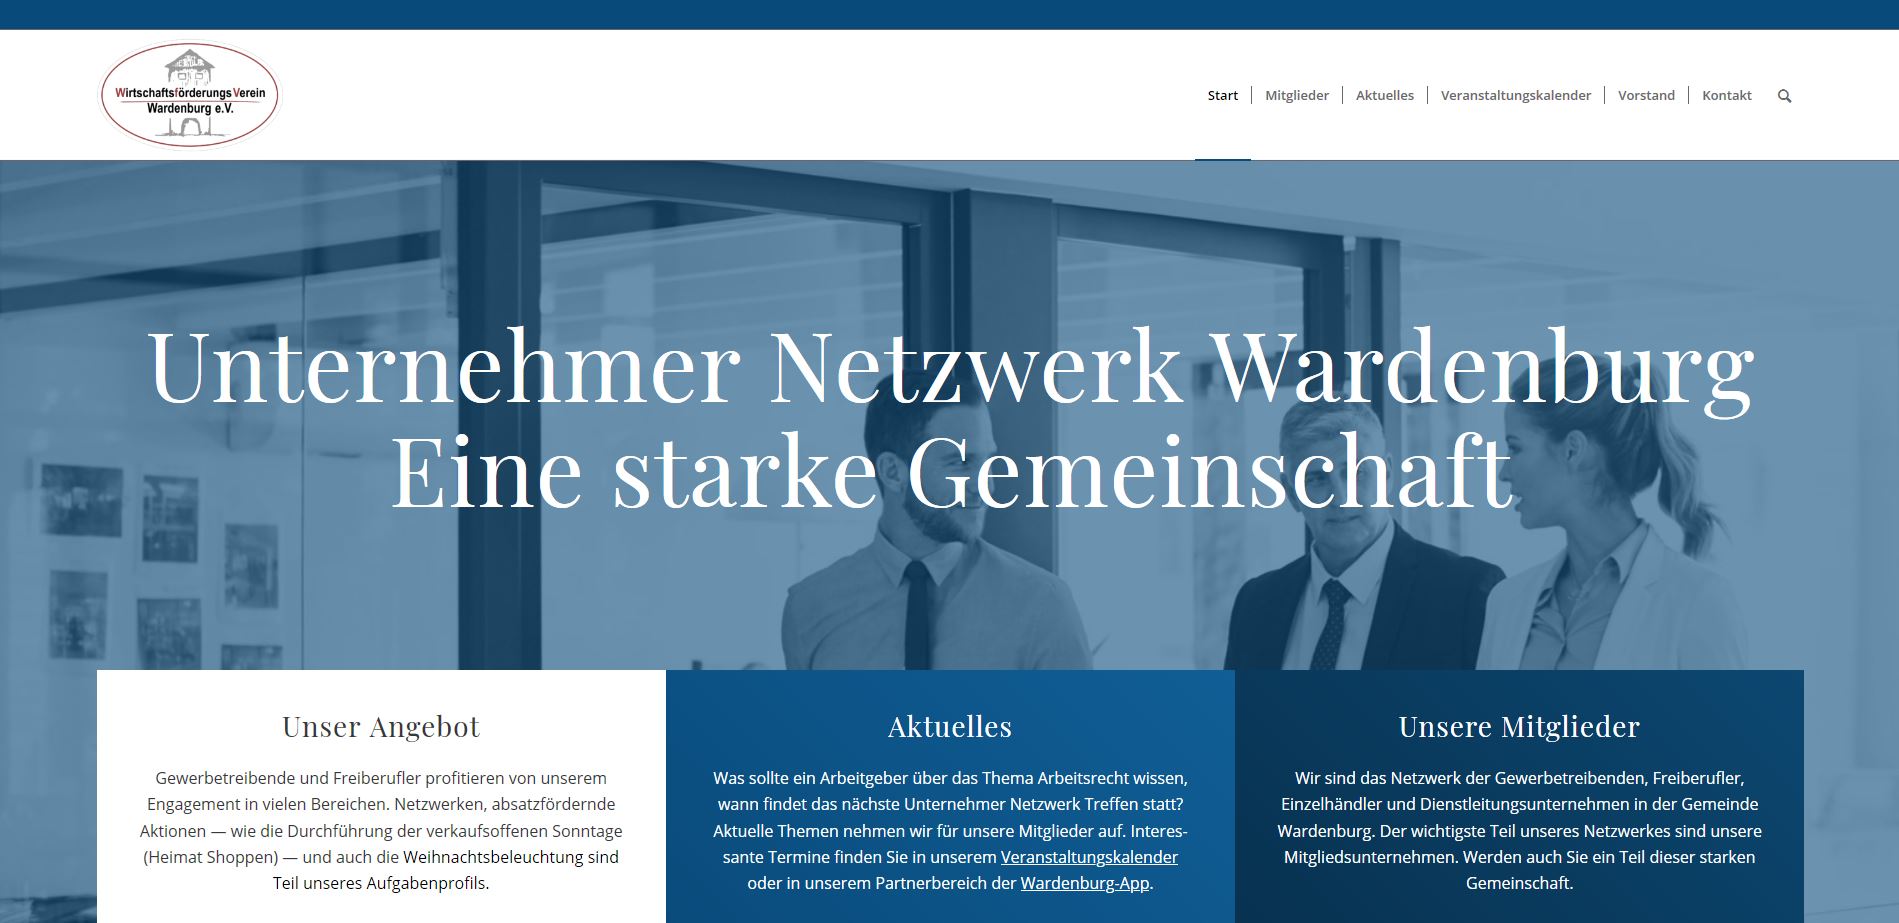 Unternehmer Netzwerk Wardenburg. Eine starke Gemeinschaft erfolgreicher Menschen. Webseite unter www.wfv-wardenburg.de